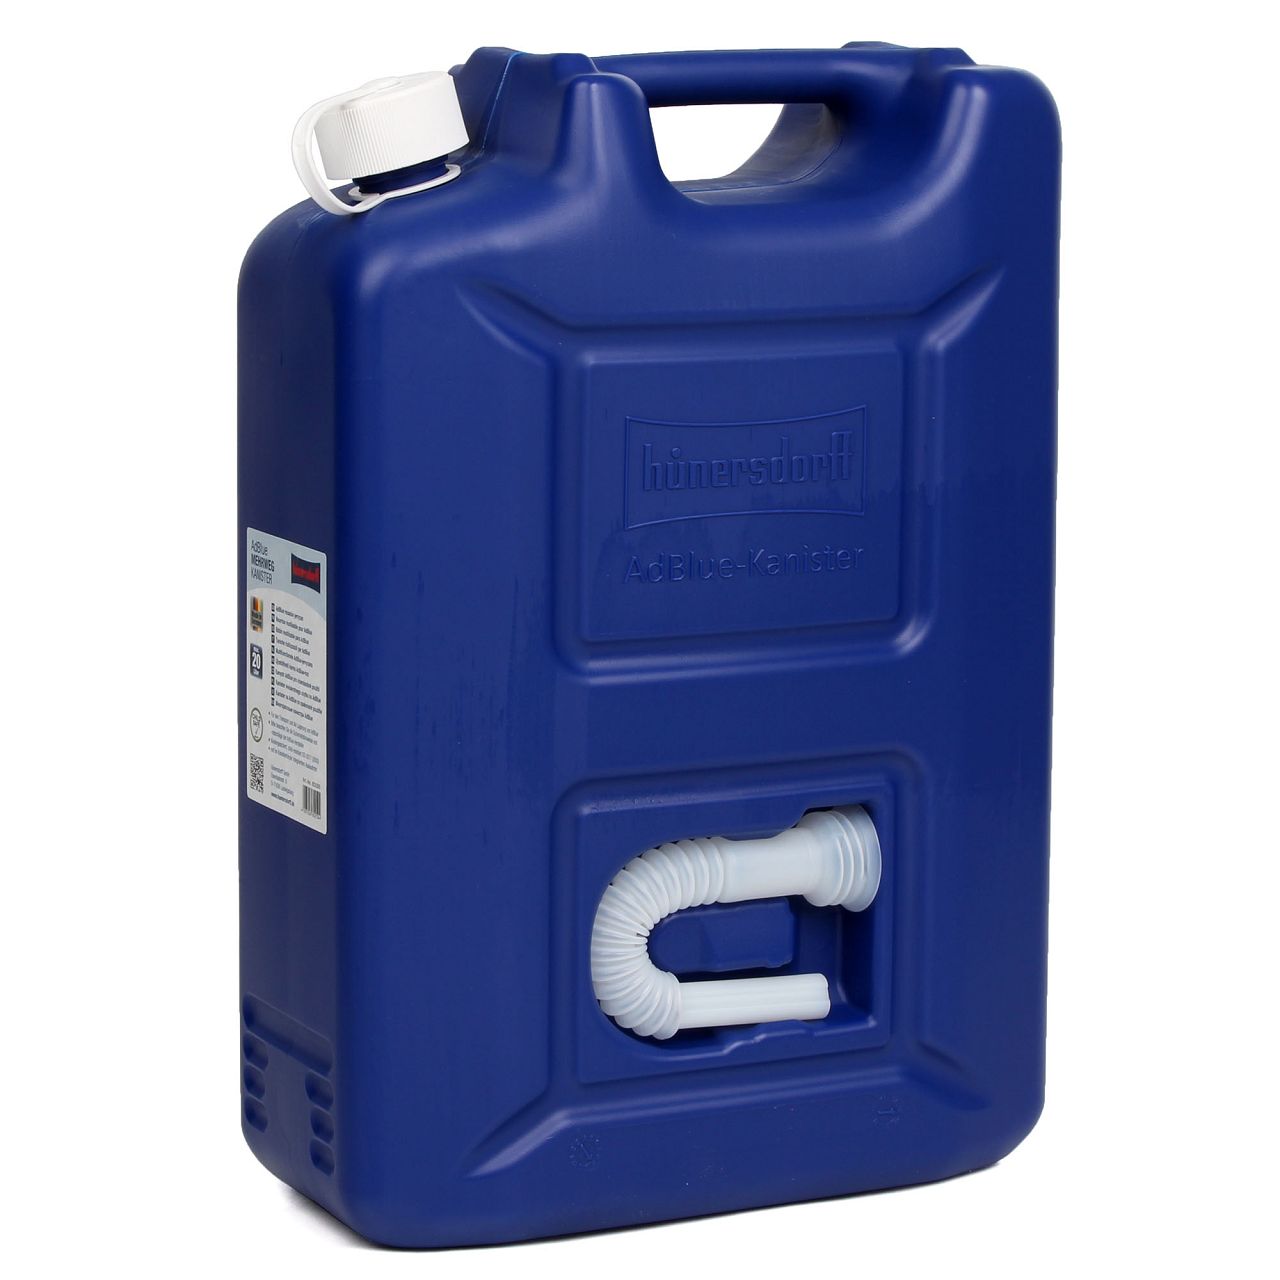 20 Liter HÜNERSDORFF 802500 AdBlue Kanister Reservekanister mit Auslaufrohr UNBEFÜLLT